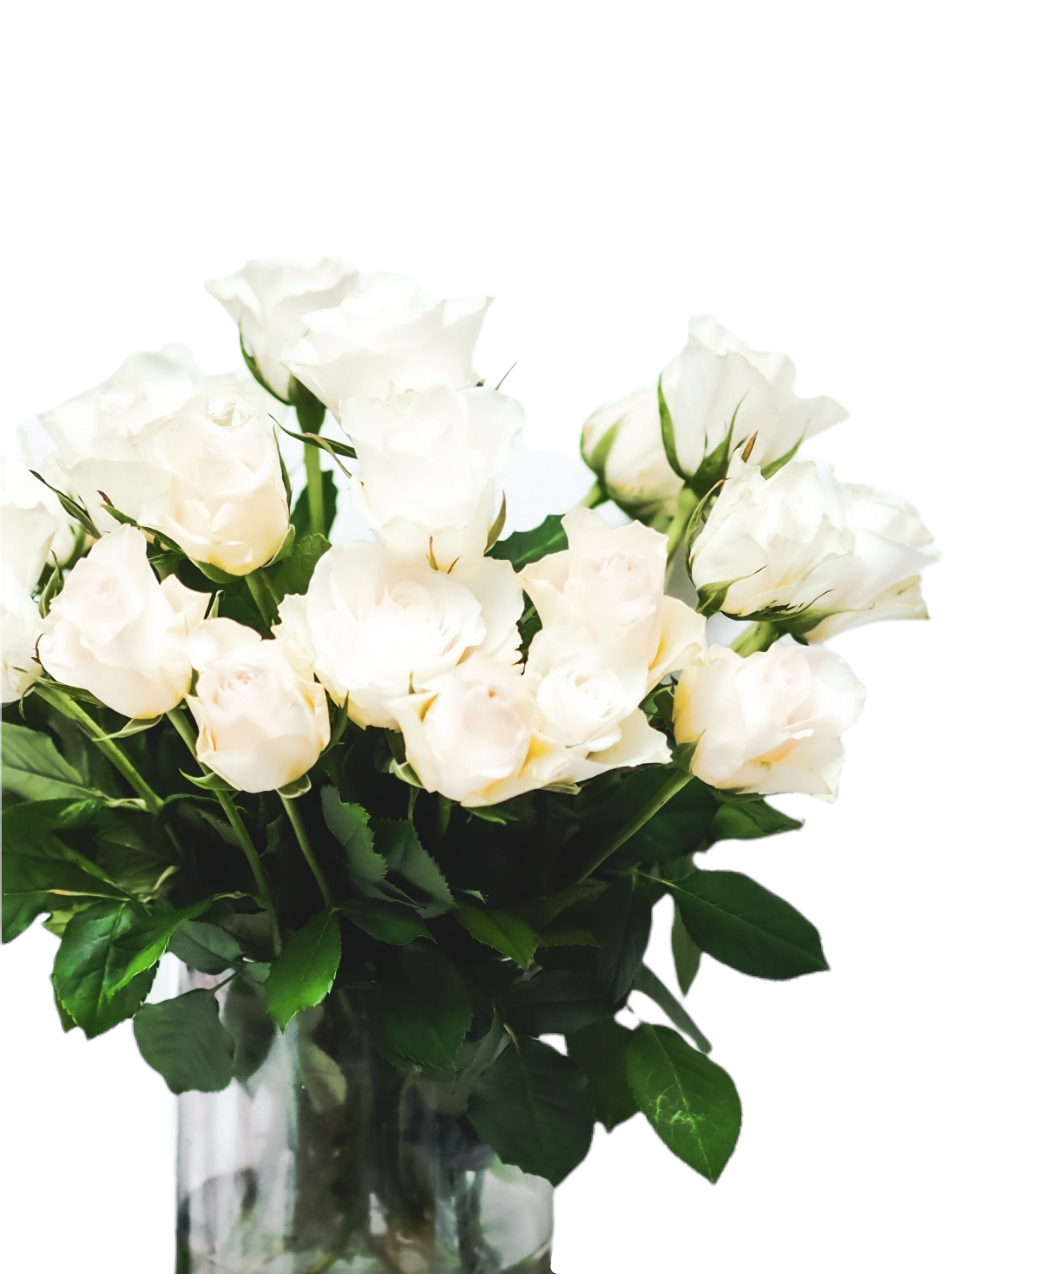 Hvid rose buket